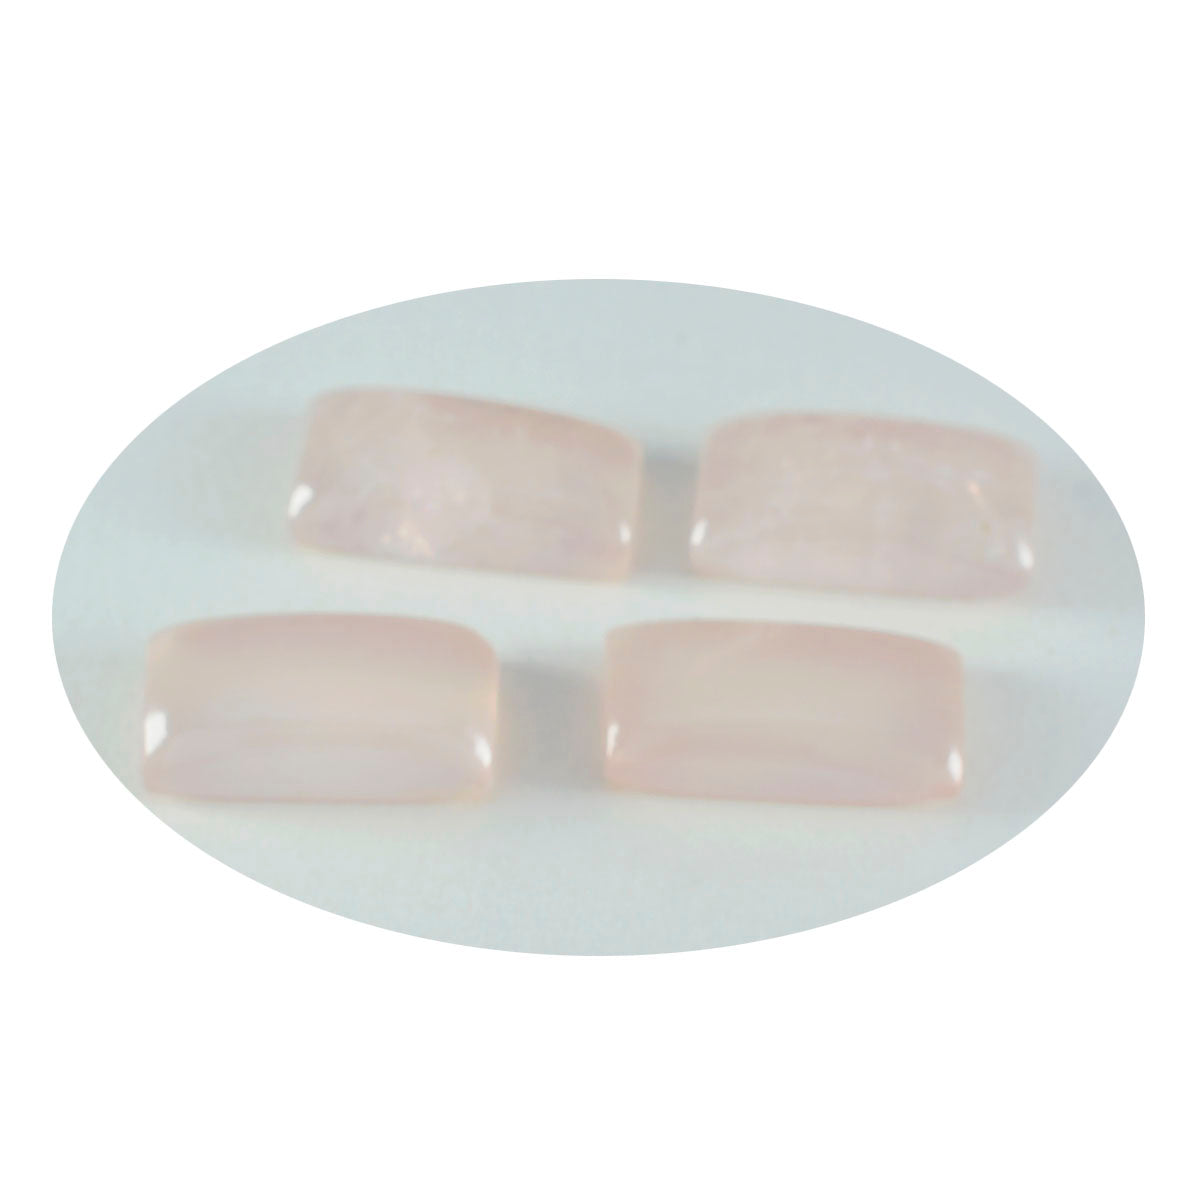 riyogems 1 pieza cabujón de cuarzo rosa rosa 8x16 mm forma baguett piedra preciosa suelta de calidad aa